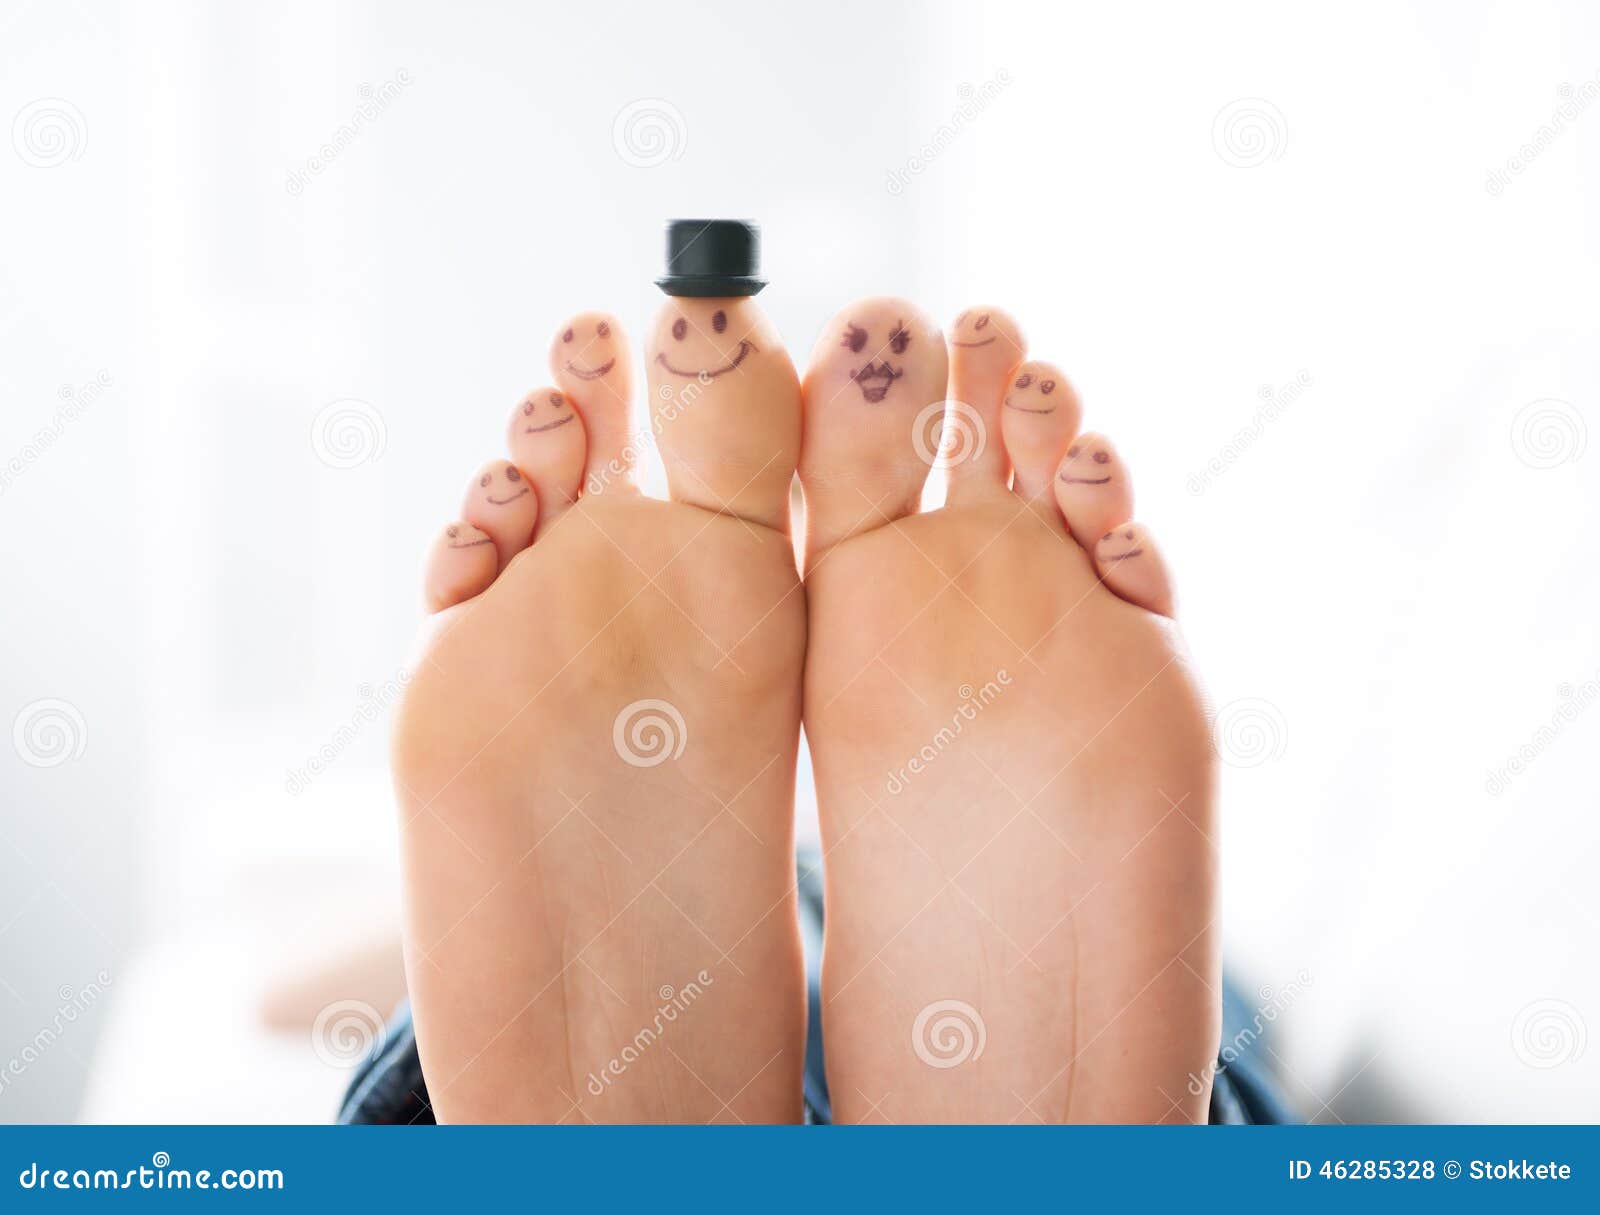 happy feet family